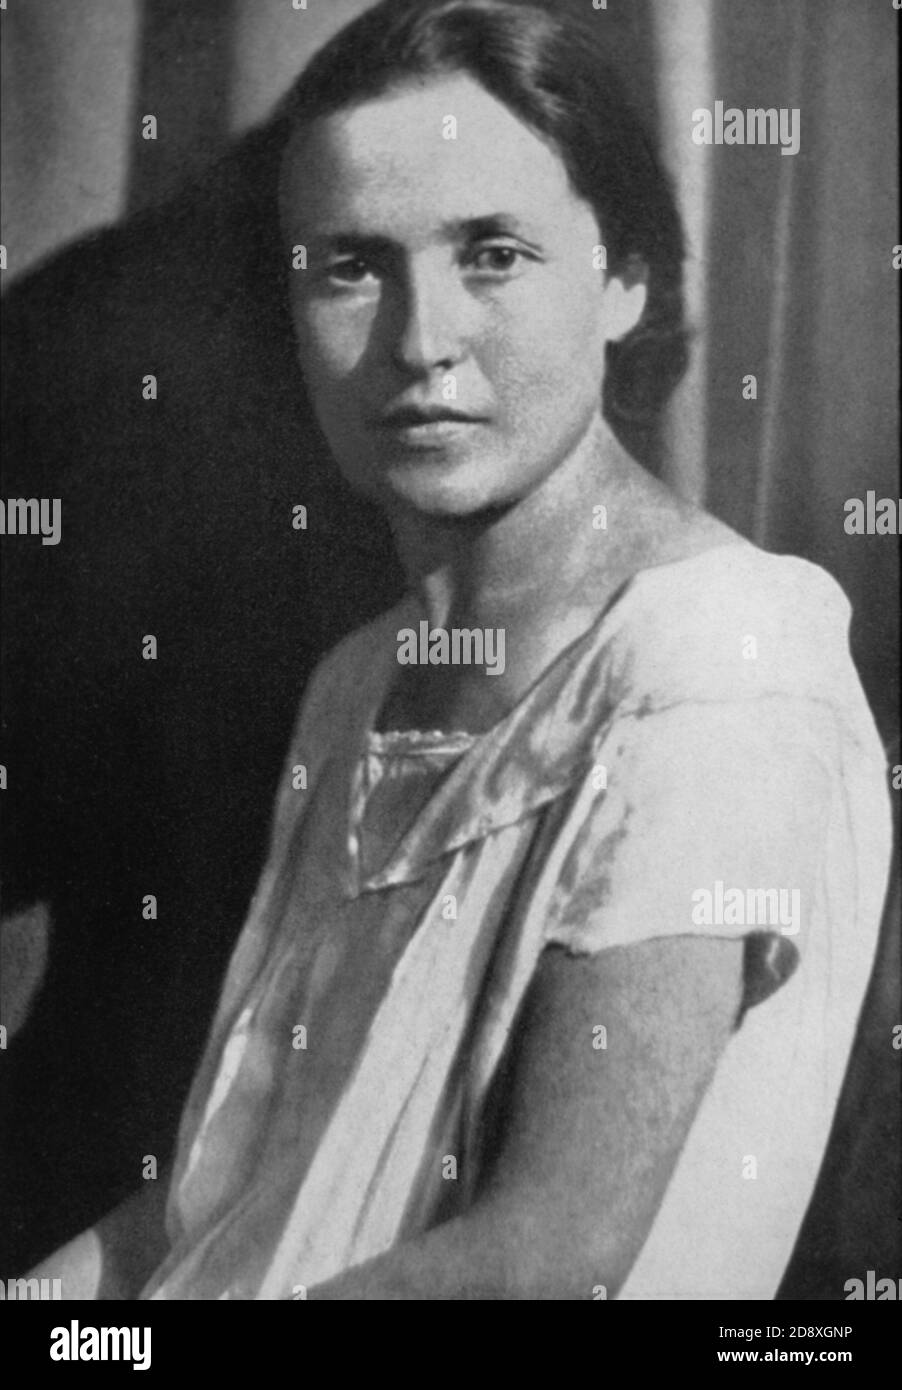 1920 ' s : GIULIA SCHUCHT , russische Frau von ANTONIO GRAMSCI ( 1891 - 1937 ) , italienischer Intellektueller , Schriftsteller und kommunistisches Opfer der faschistischen Periode - PARTITO COMUNISTA ITALIANO - PCI - POLITICO - POLITIKER - POLITICA - POLITIC---- Archivio GBB Stockfoto